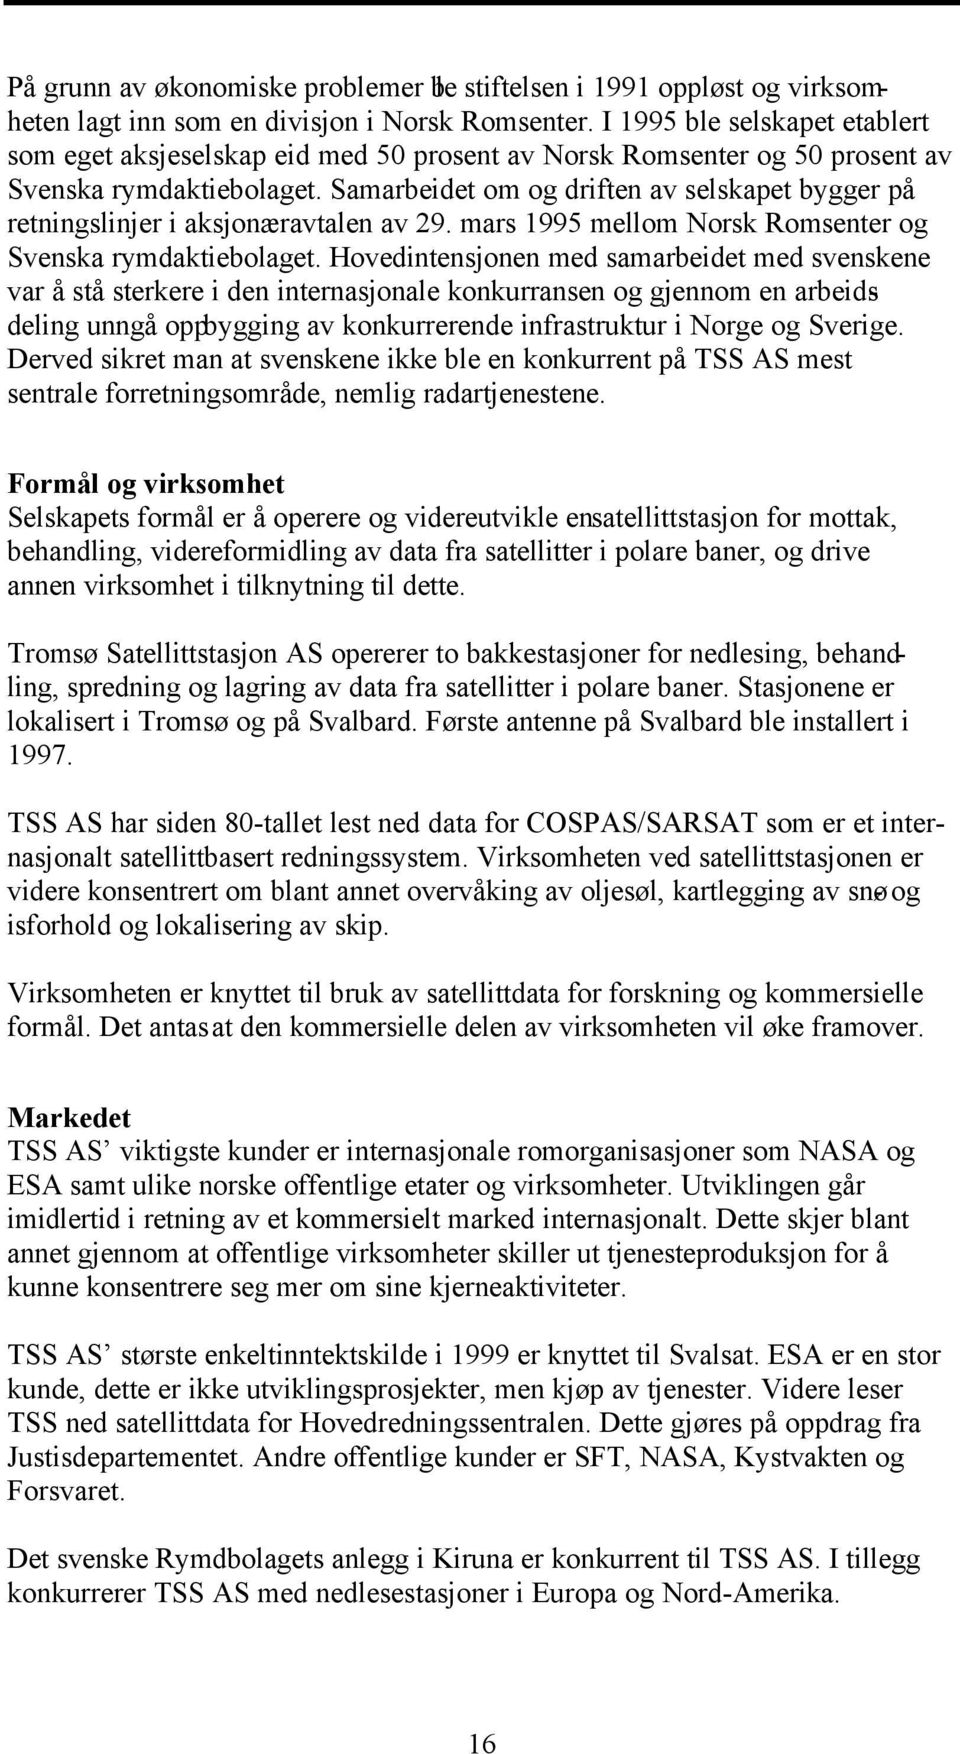 Samarbeidet om og driften av selskapet bygger på retningslinjer i aksjonæravtalen av 29. mars 1995 mellom Norsk Romsenter og Svenska rymdaktiebolaget.